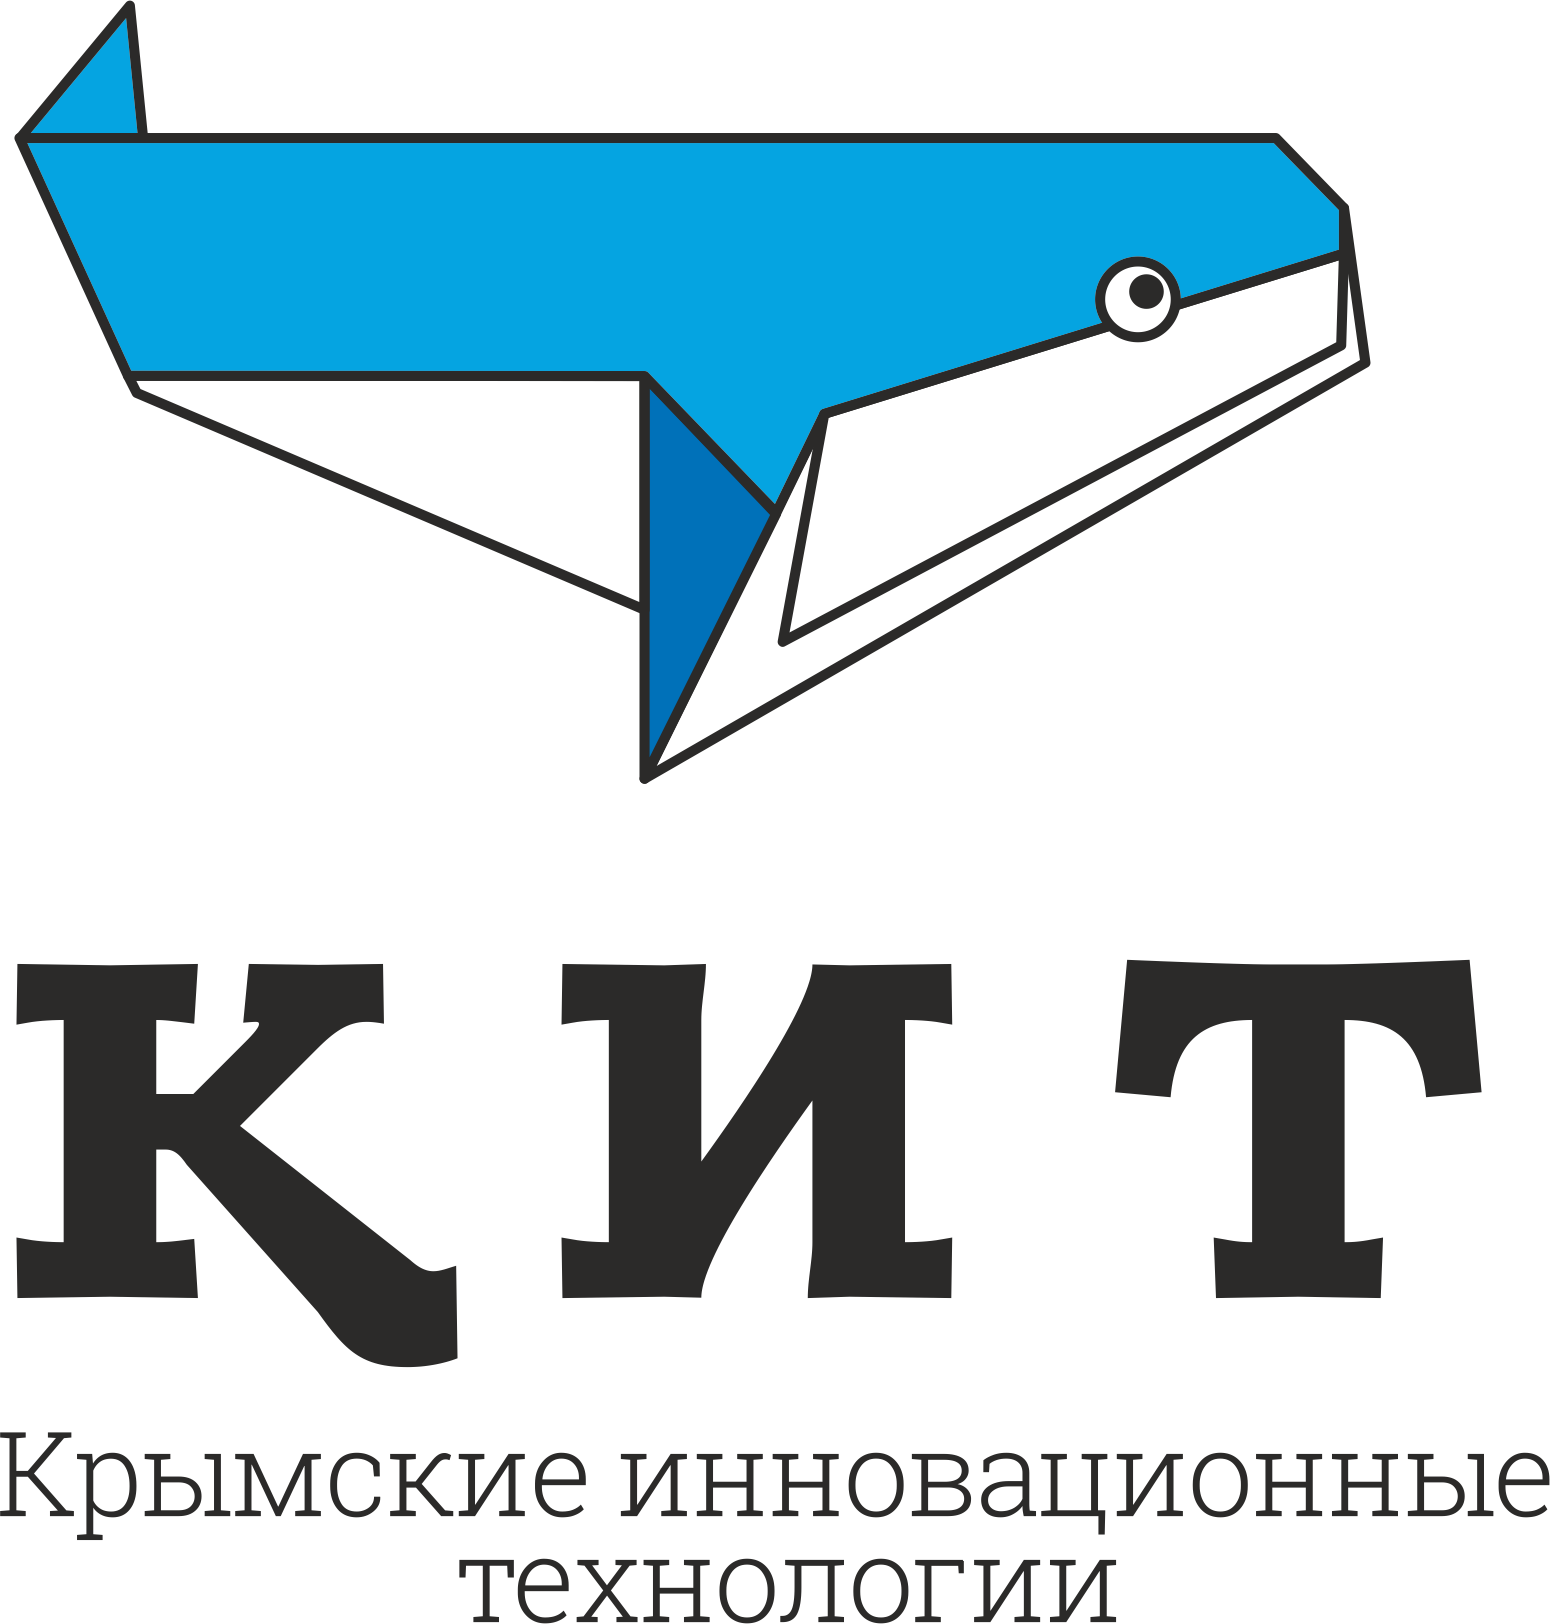 Кит. Кит лого. Фонд поддержки предпринимательства Крыма логотип. Предприятие с логотипом кита.